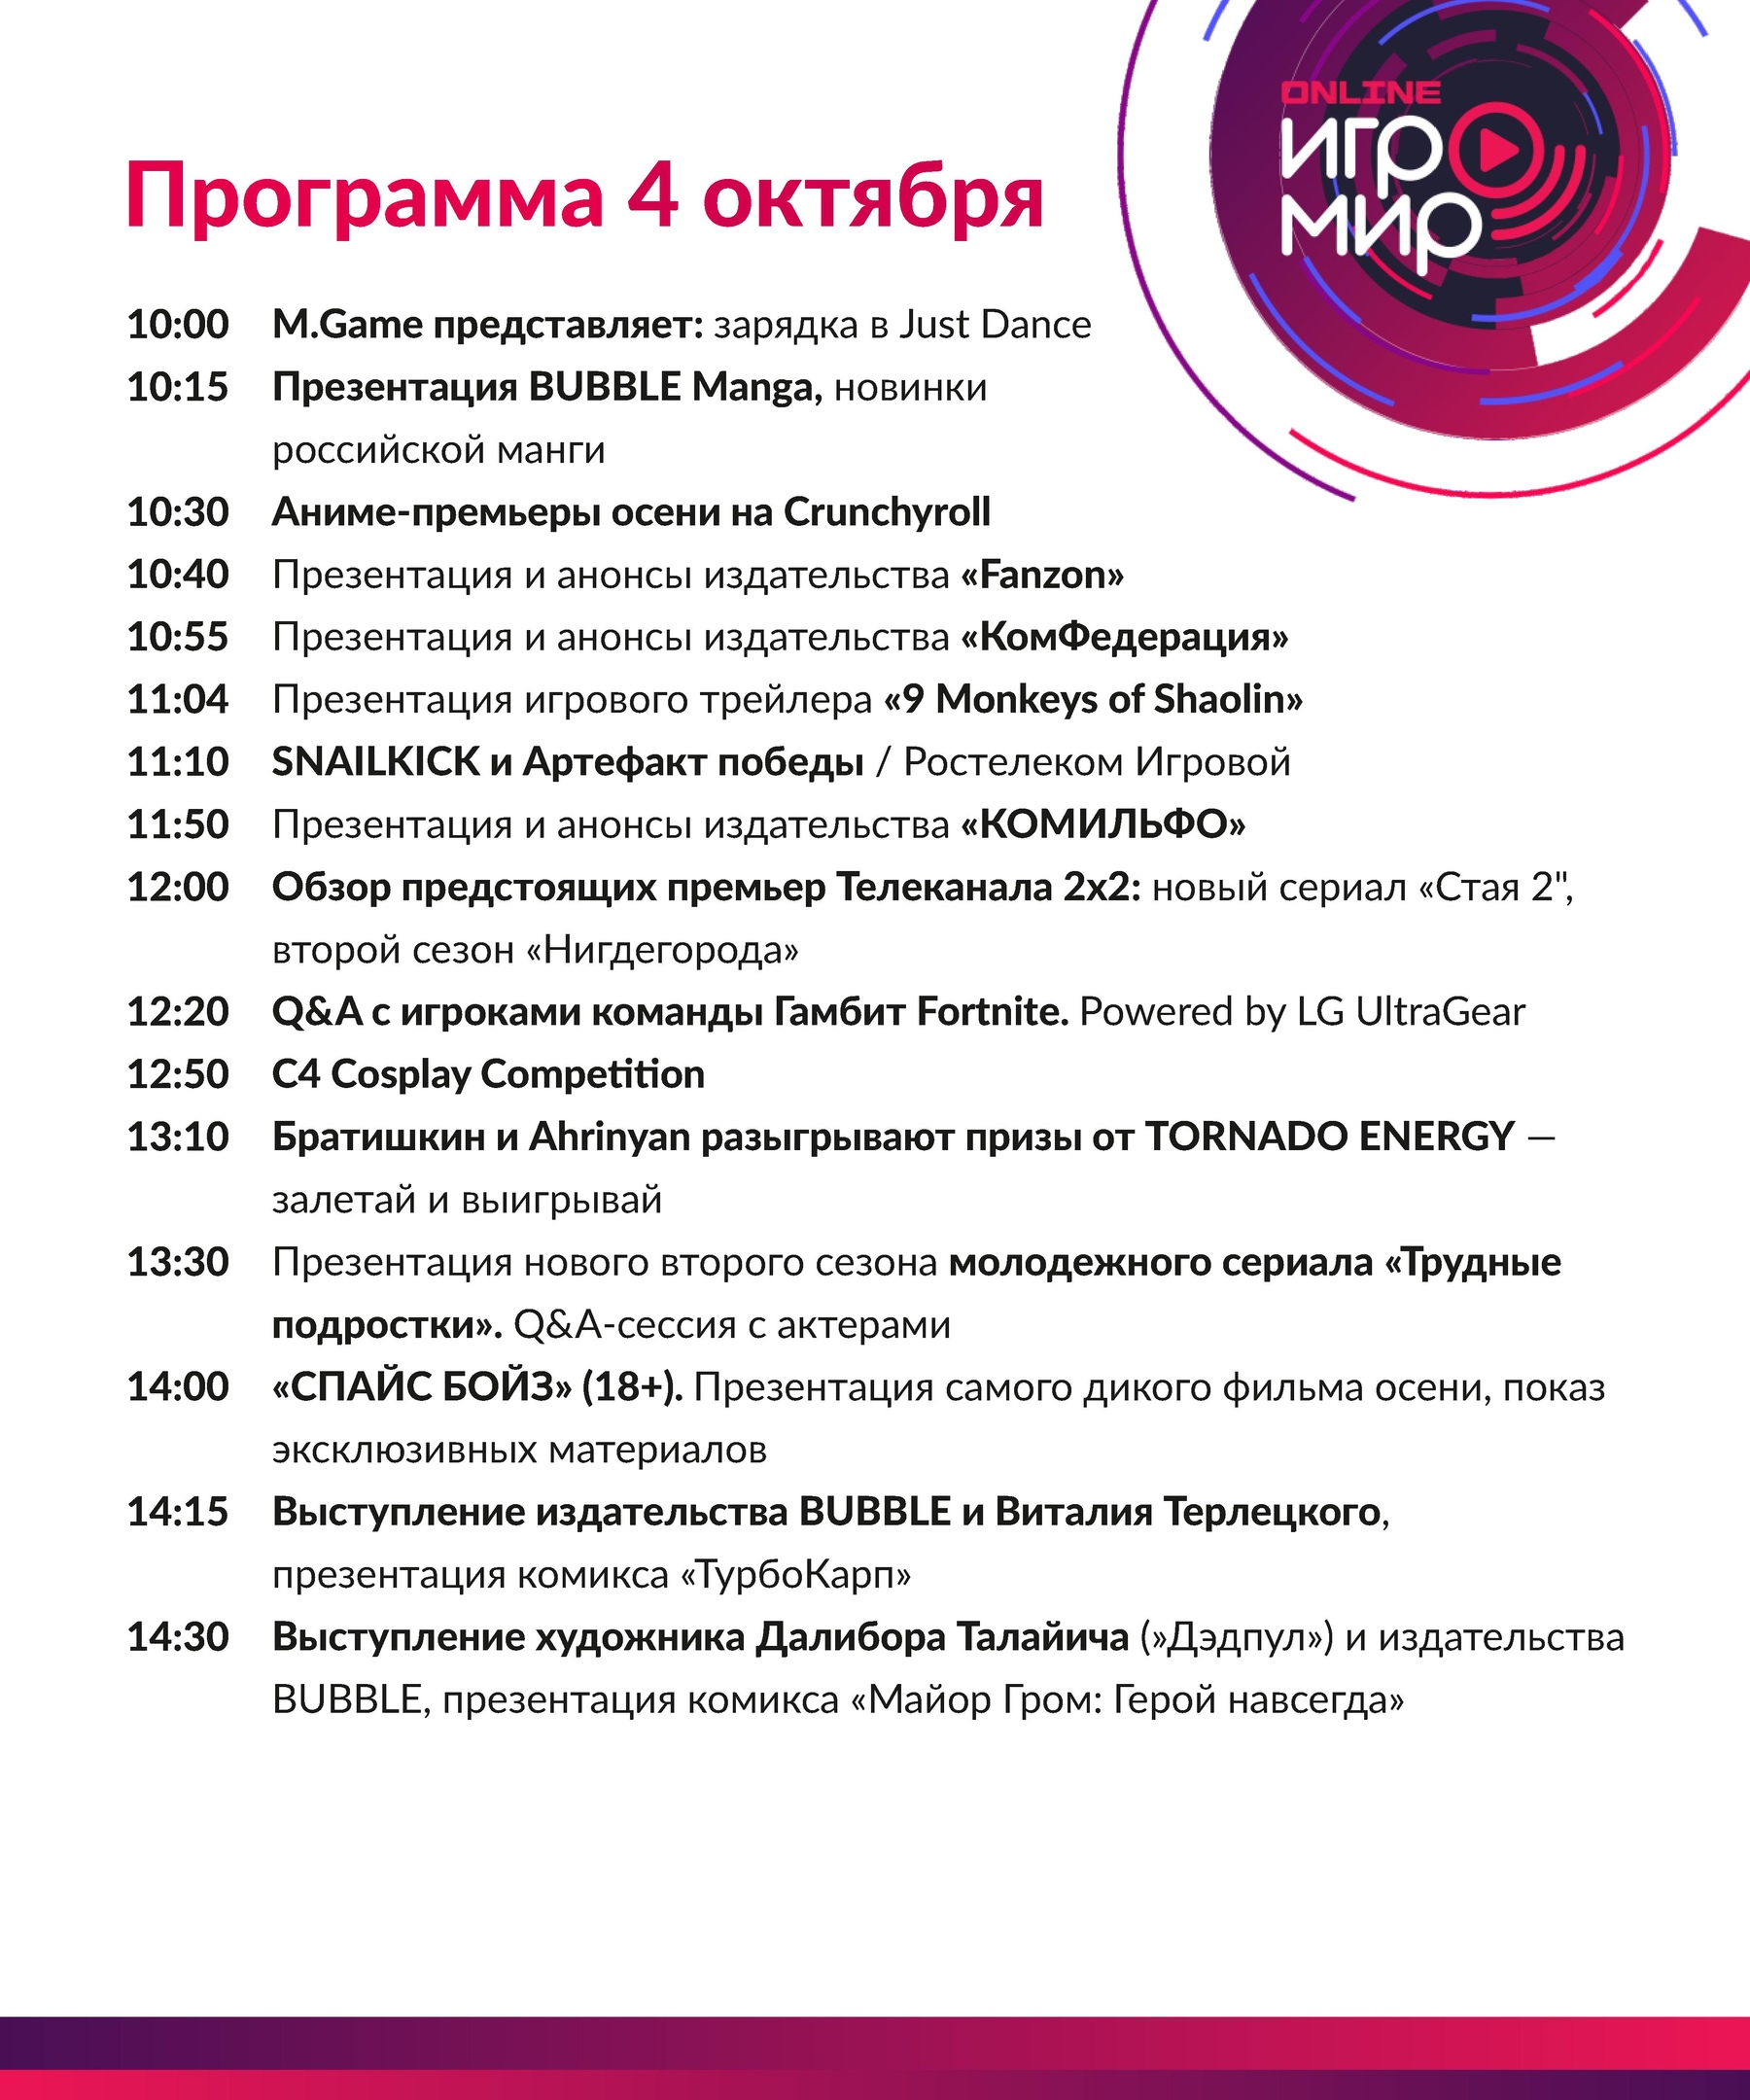 ИгроМир Online и Comic Con Russia Online 2020 - завтра!